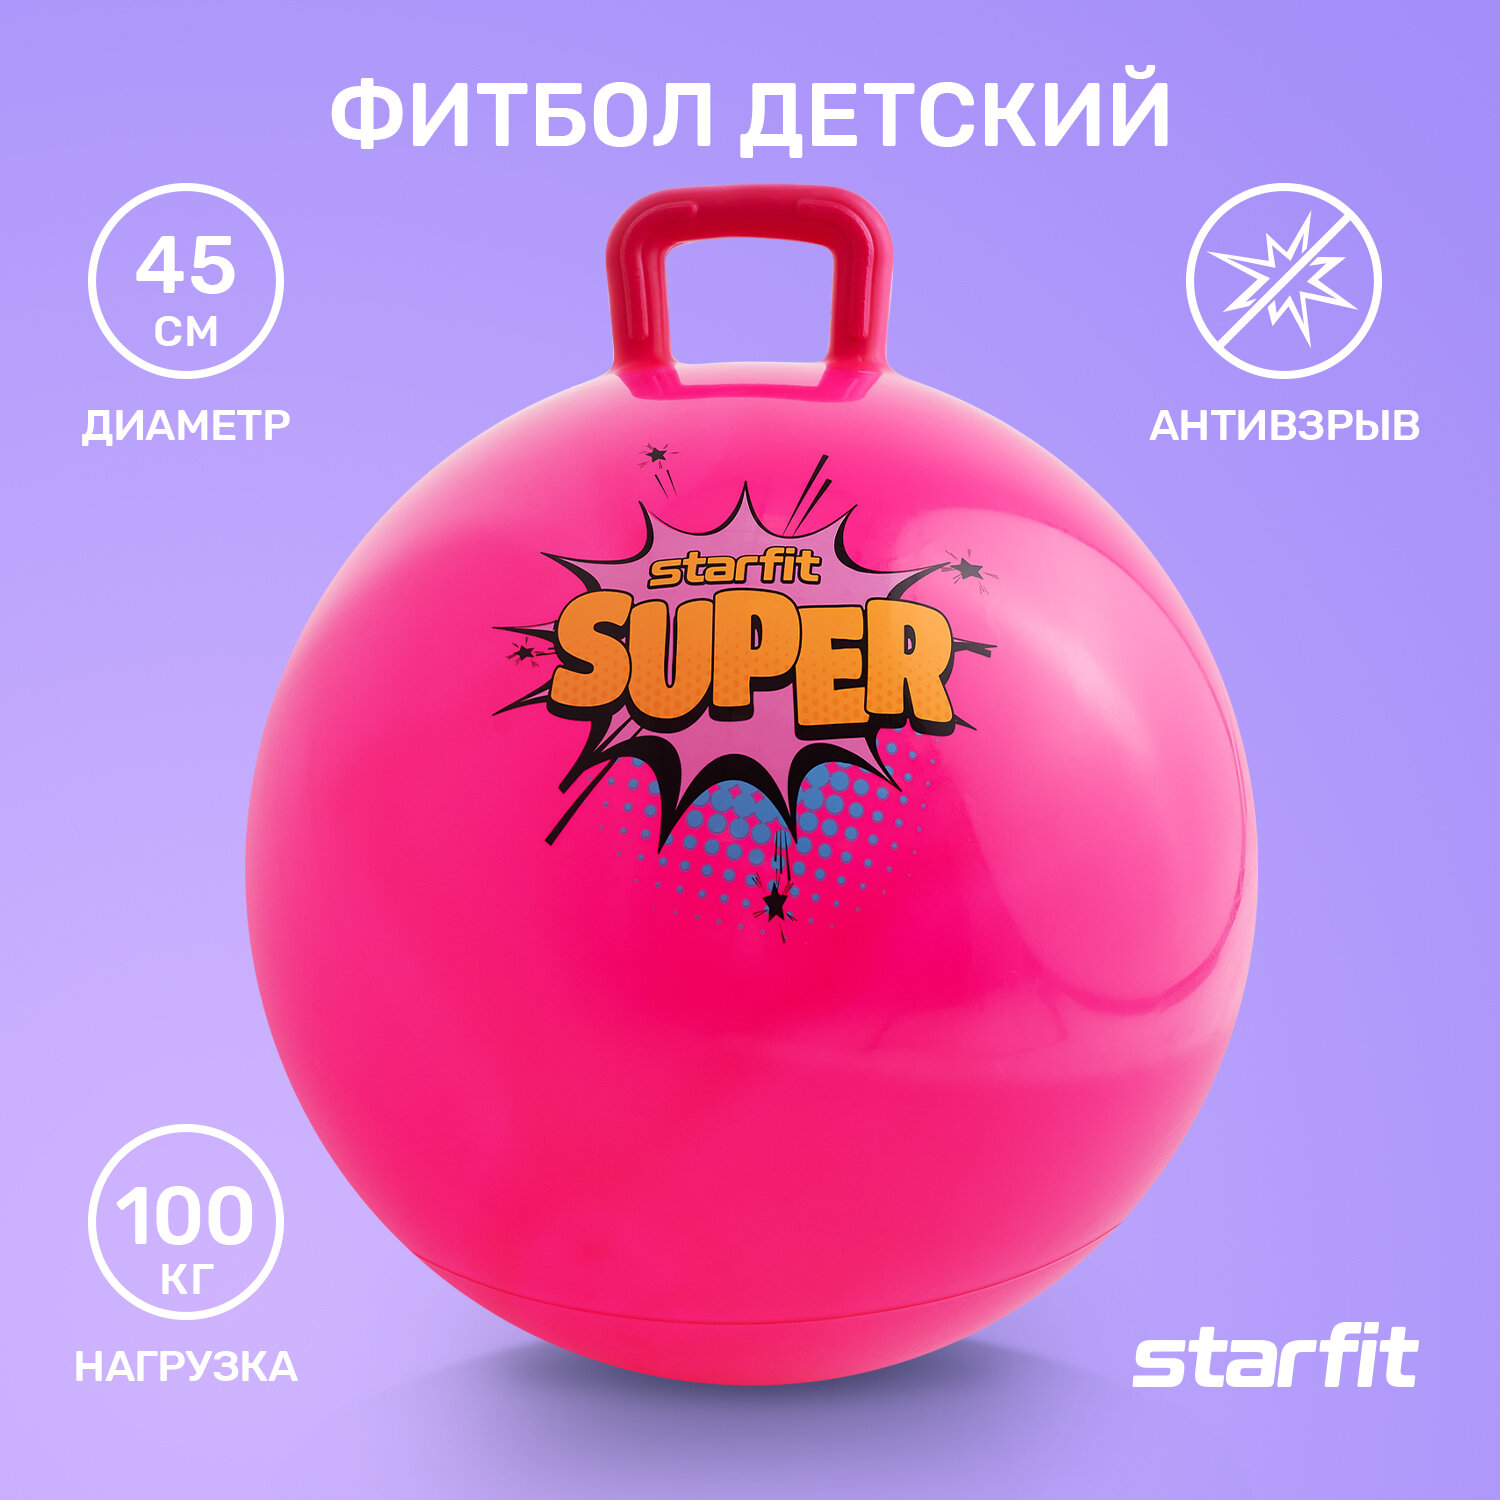 Фитбол детский с ручкой STARFIT GB-406 45 см, 500 гр, антивзрыв, розовый